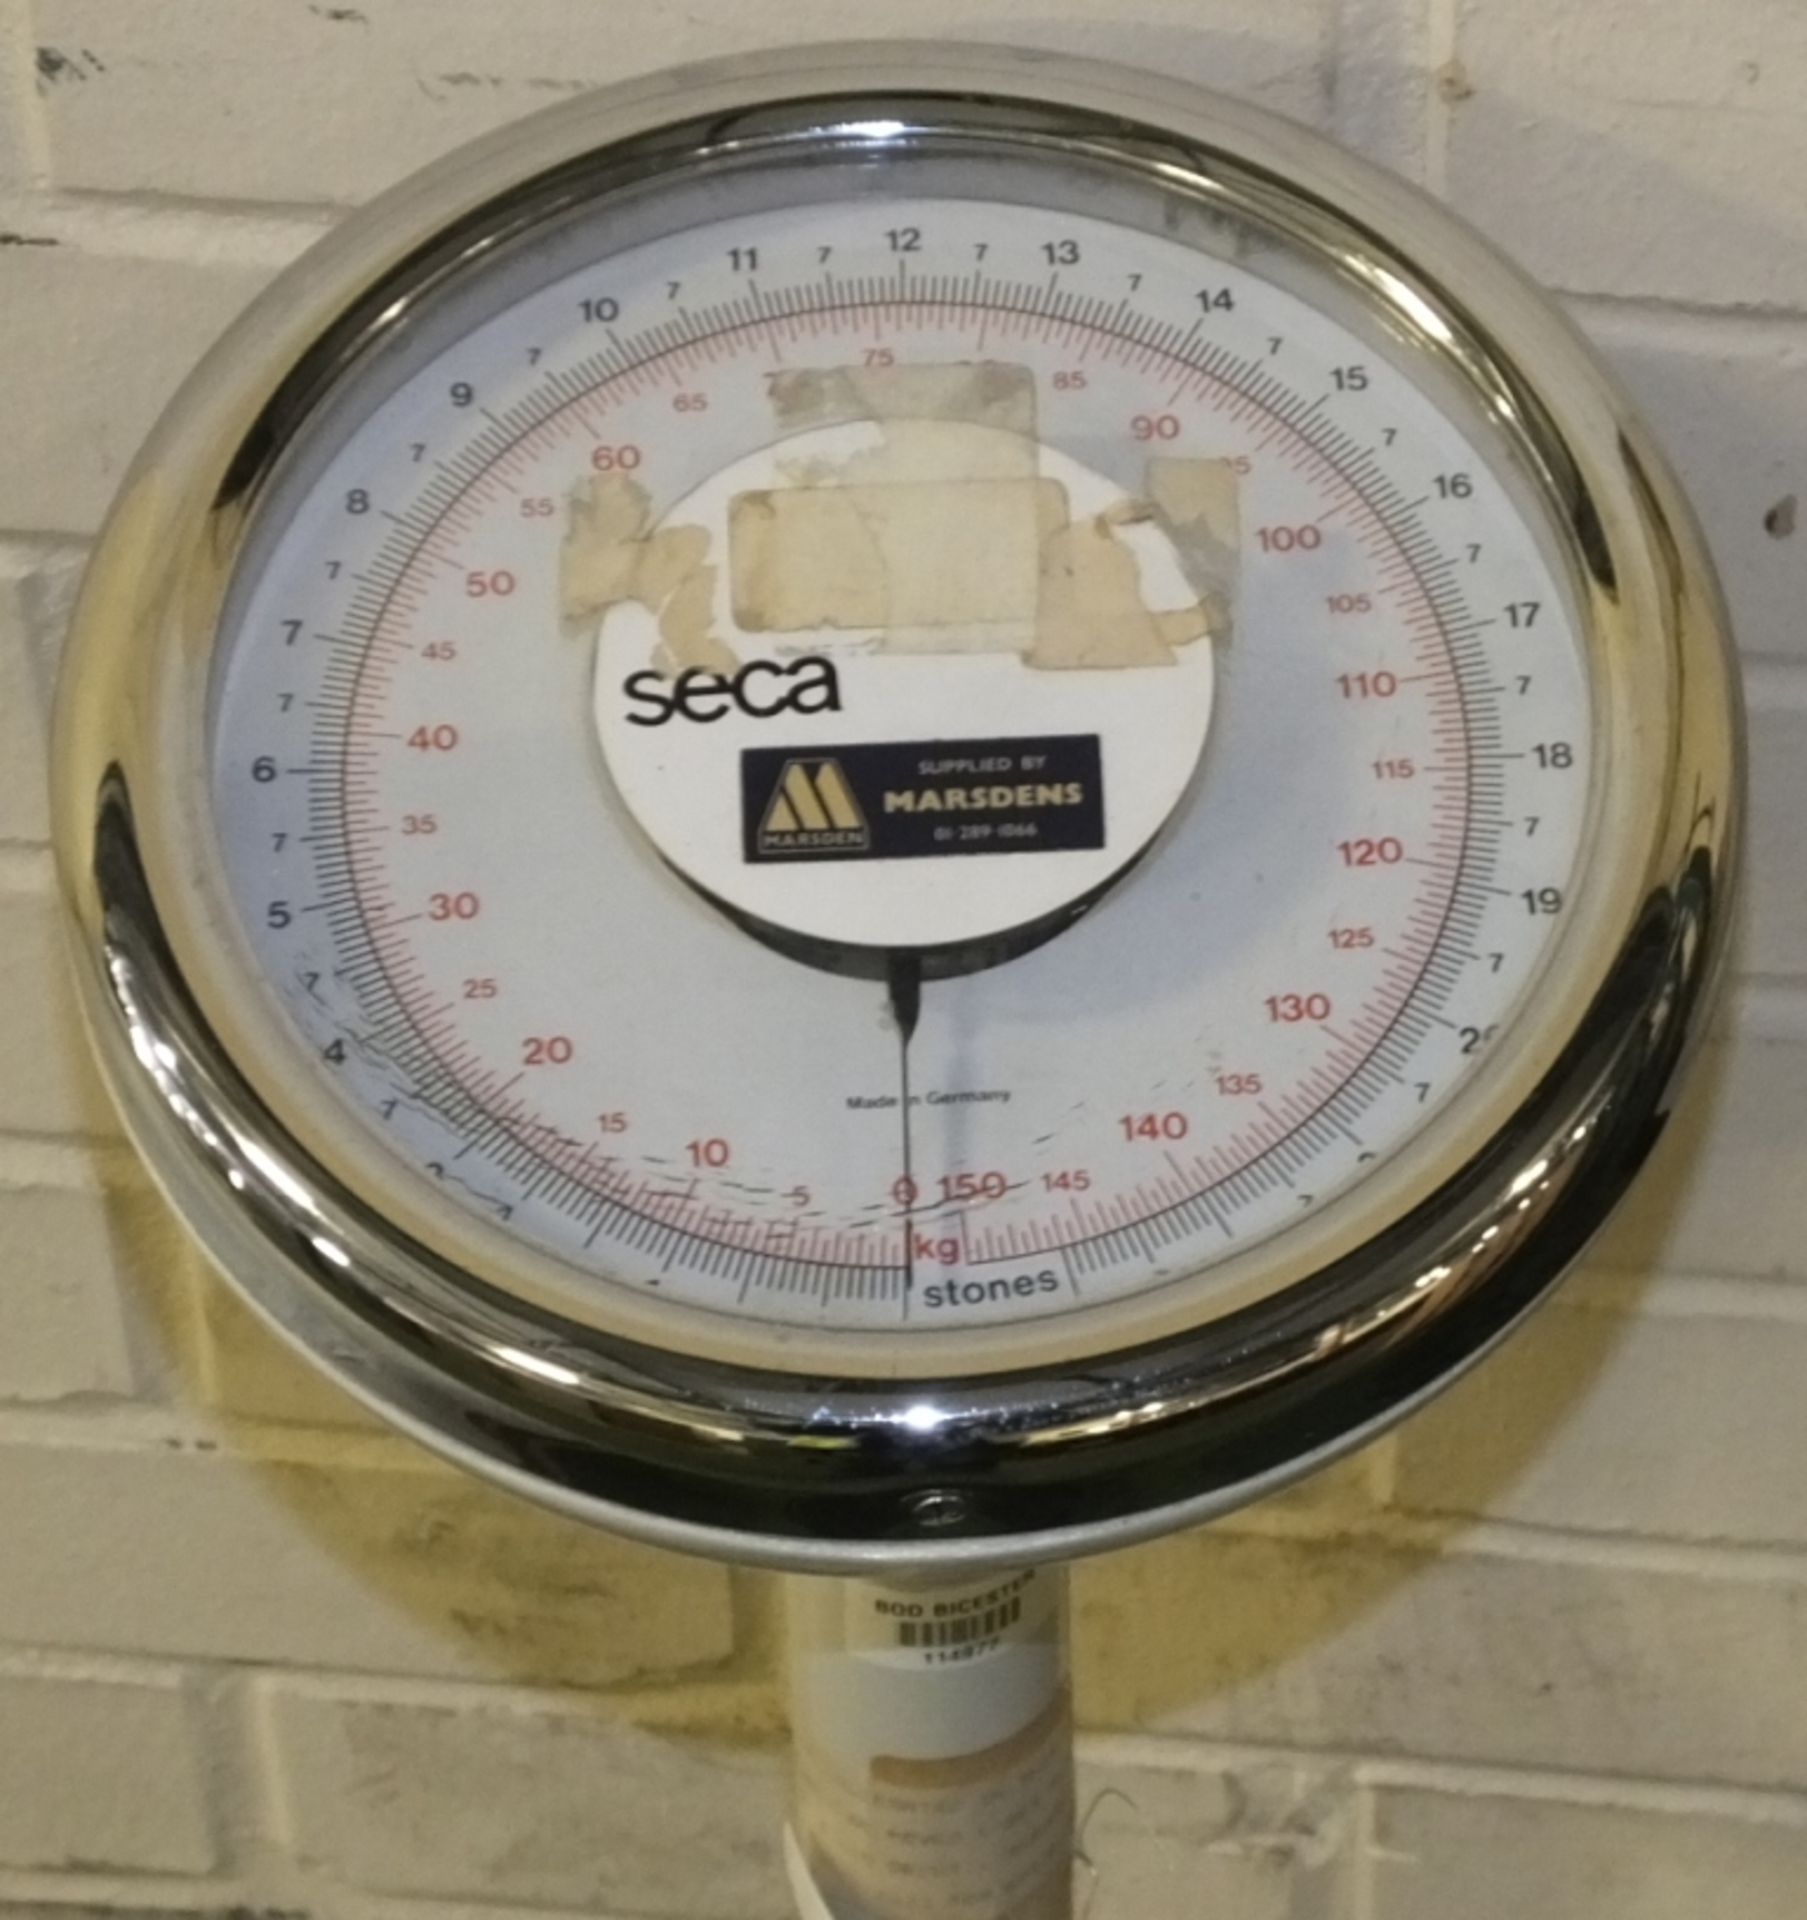 Seca platform scales - 150kg - Image 2 of 3